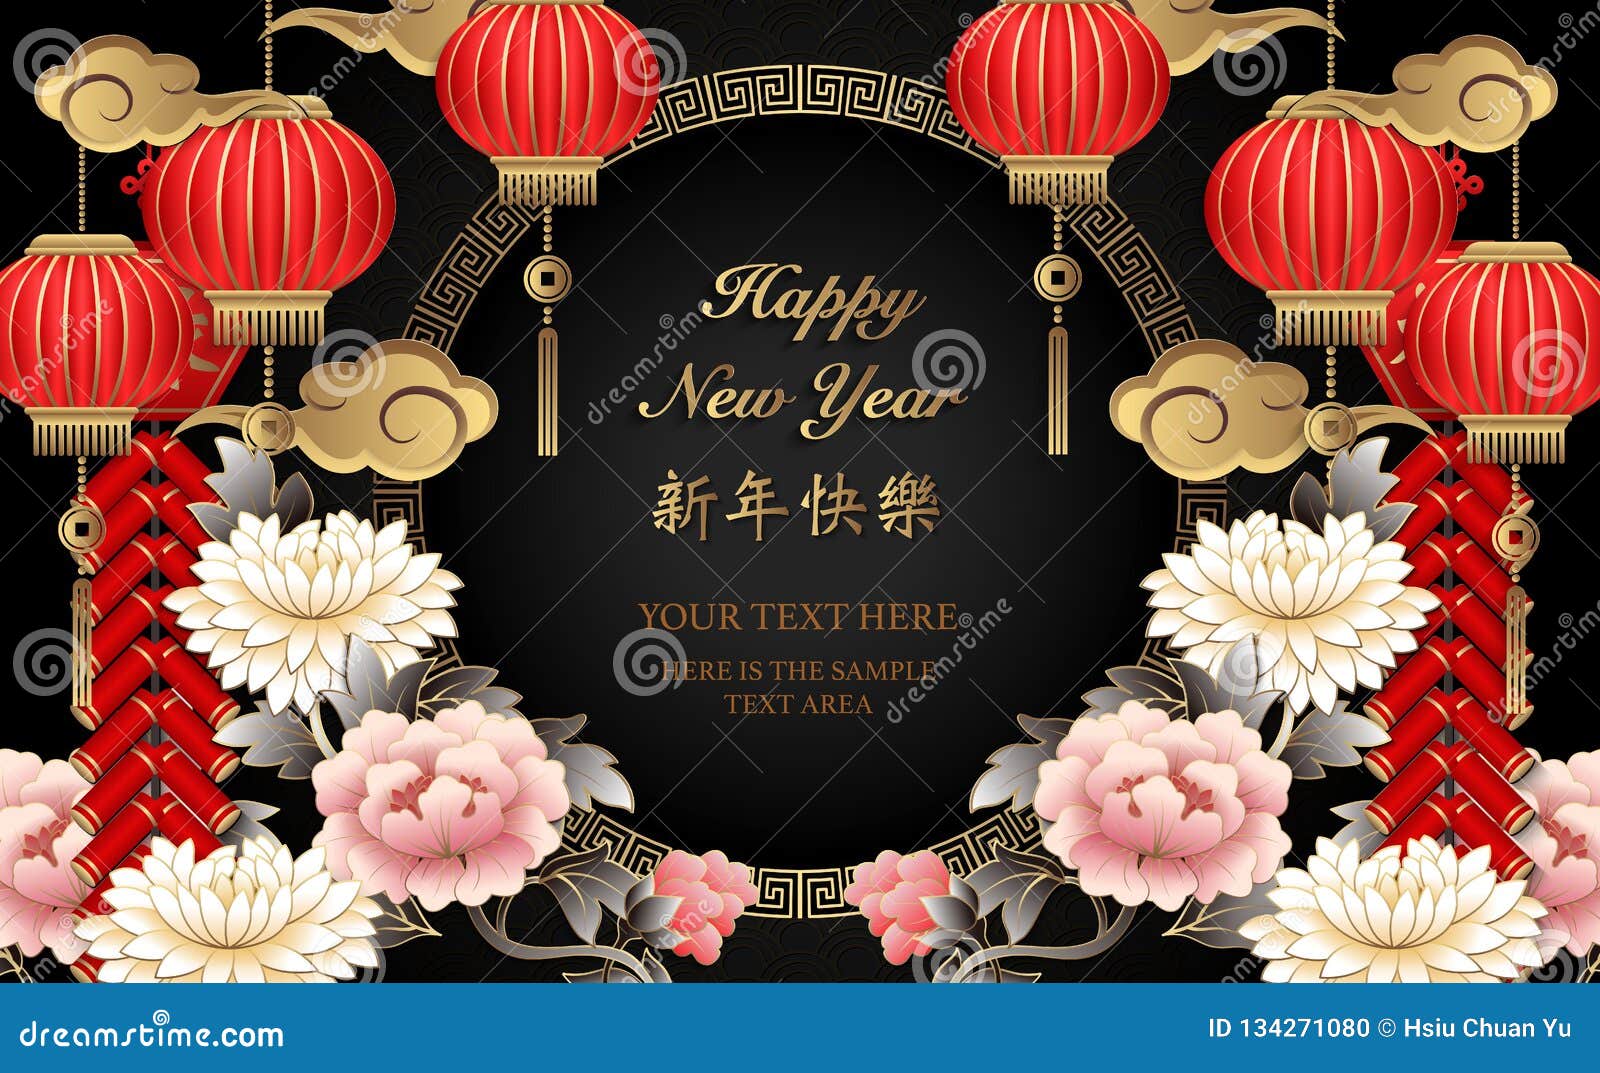 Foguetes retros chineses felizes da nuvem da lanterna da flor da peônia do relevo do ouro do ano novo e para entrelaçar o quadro redondo Tradução chinesa: Ano novo feliz